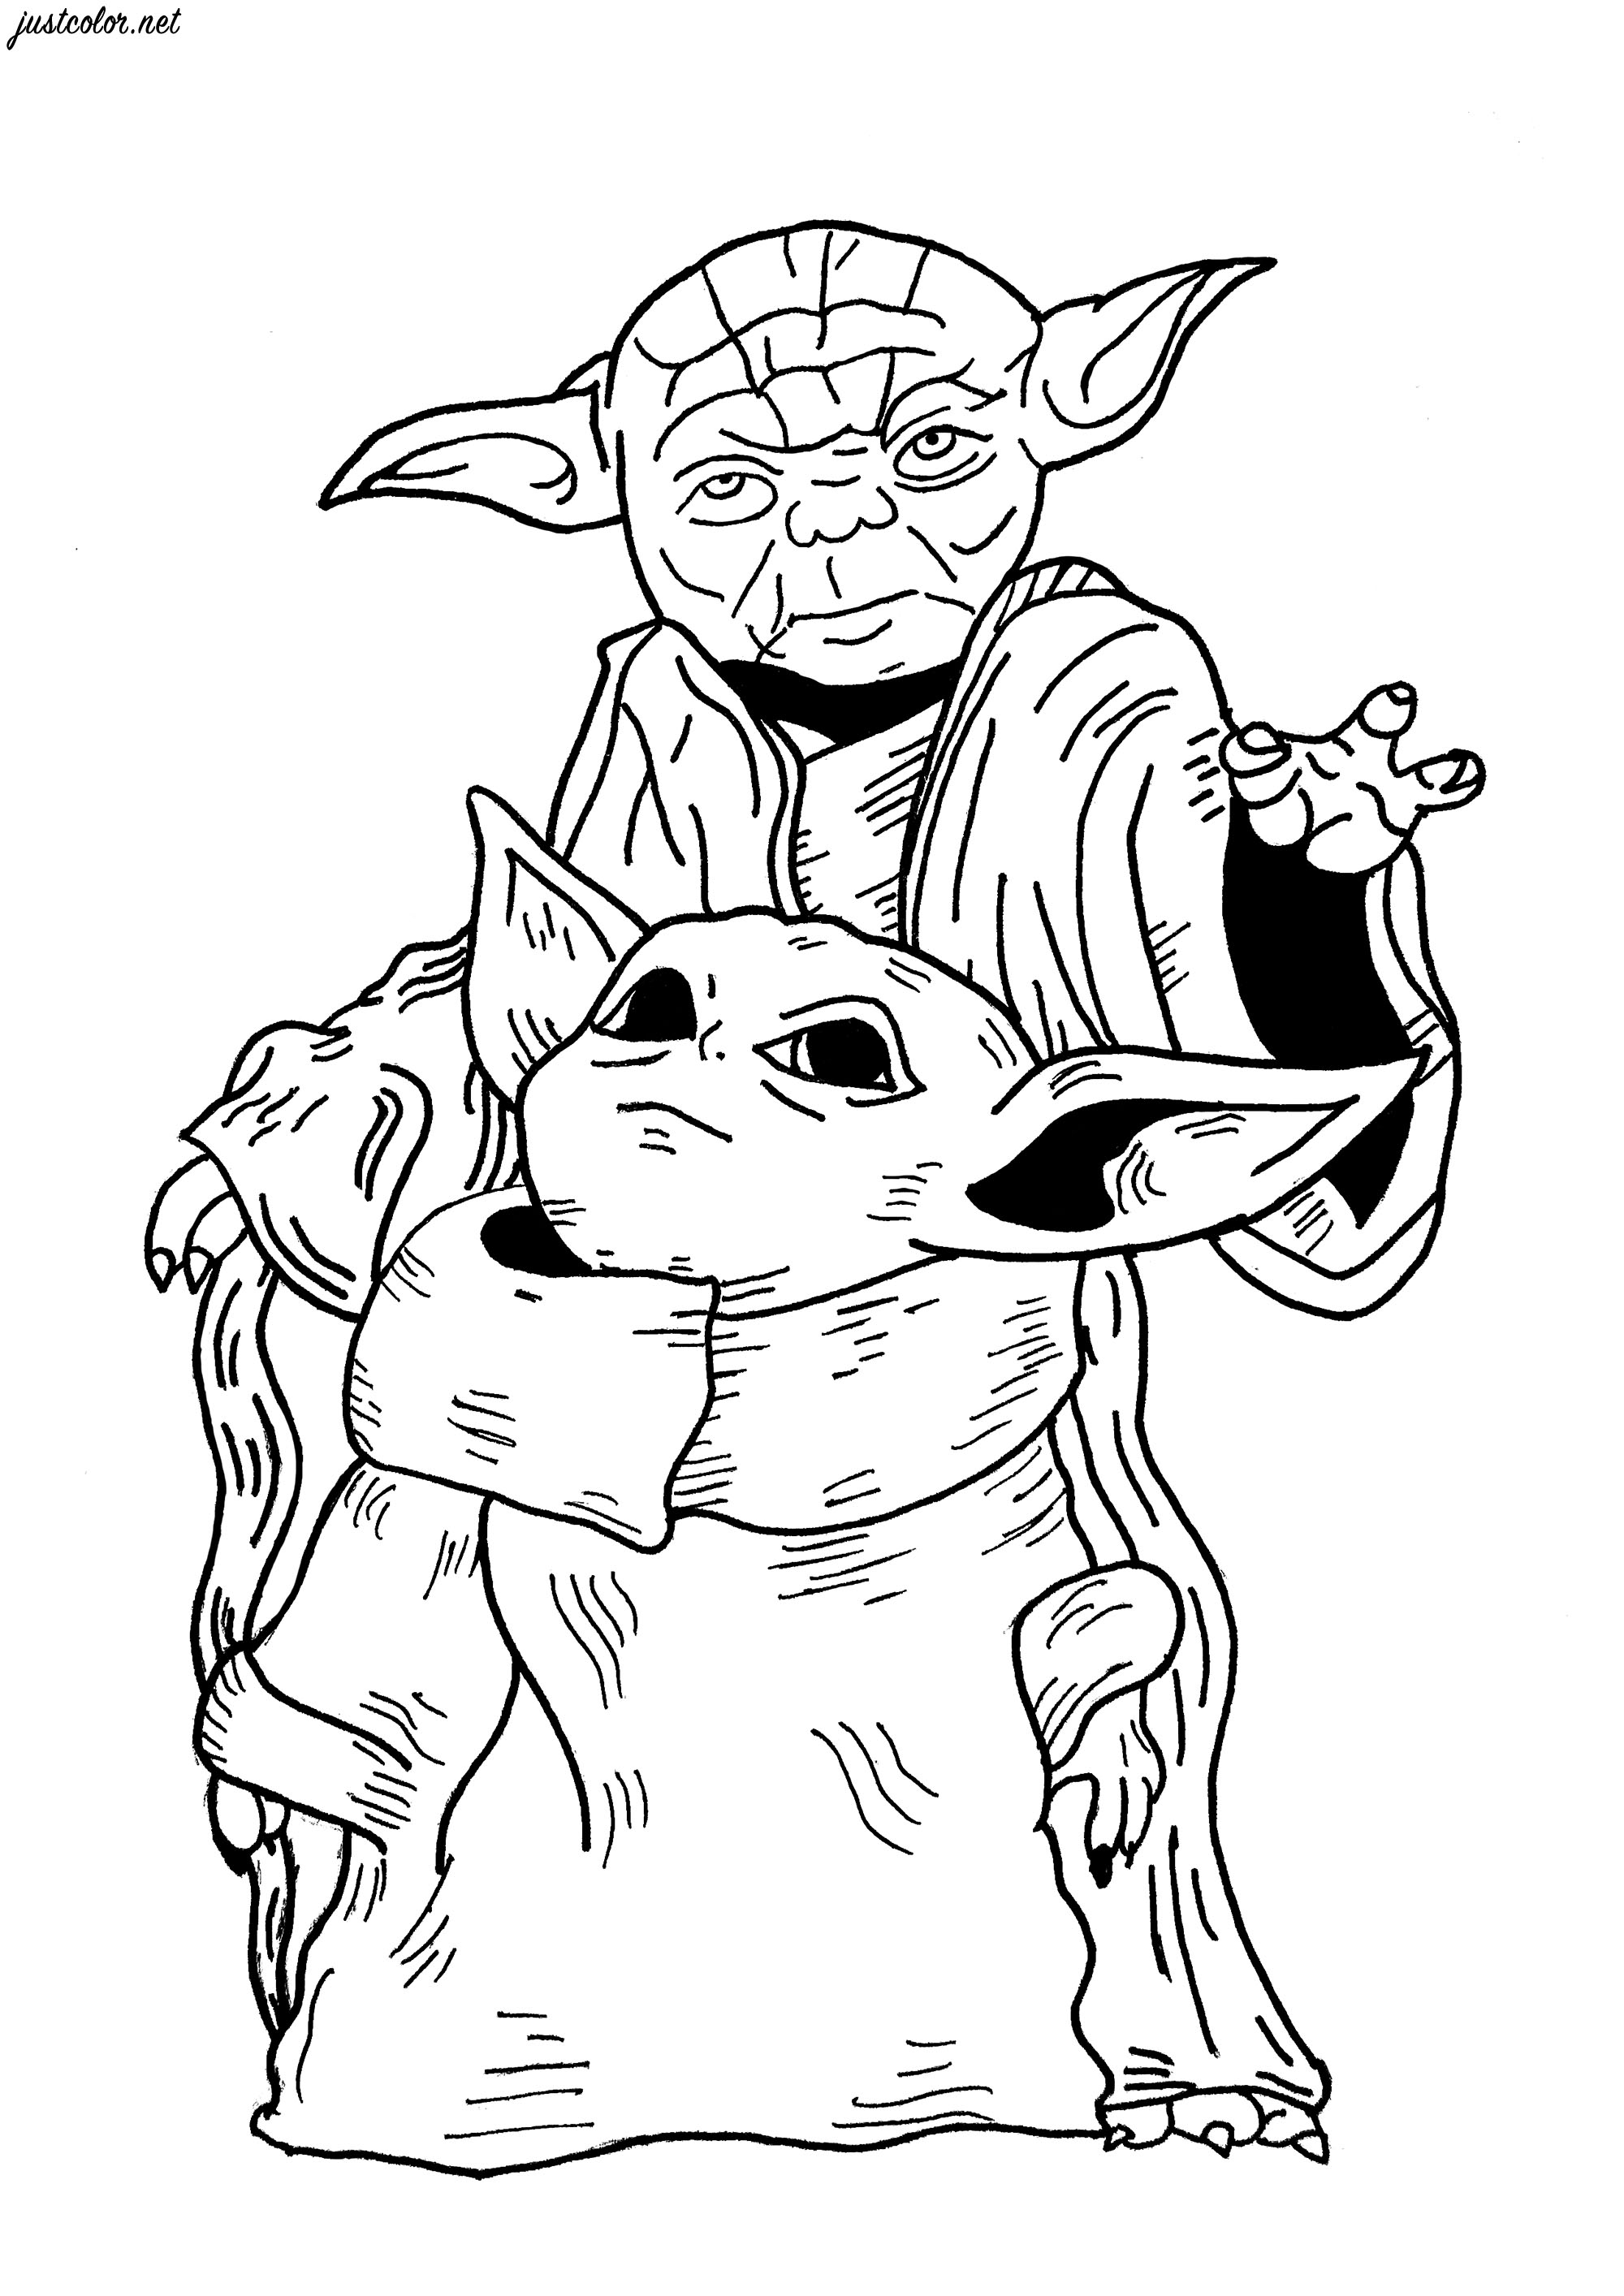 Una original página para colorear de fan-art inspirada en los personajes de Grogu (serie Star Wars The Mandalorian) y el Maestro Yoda, Artista : Gamma